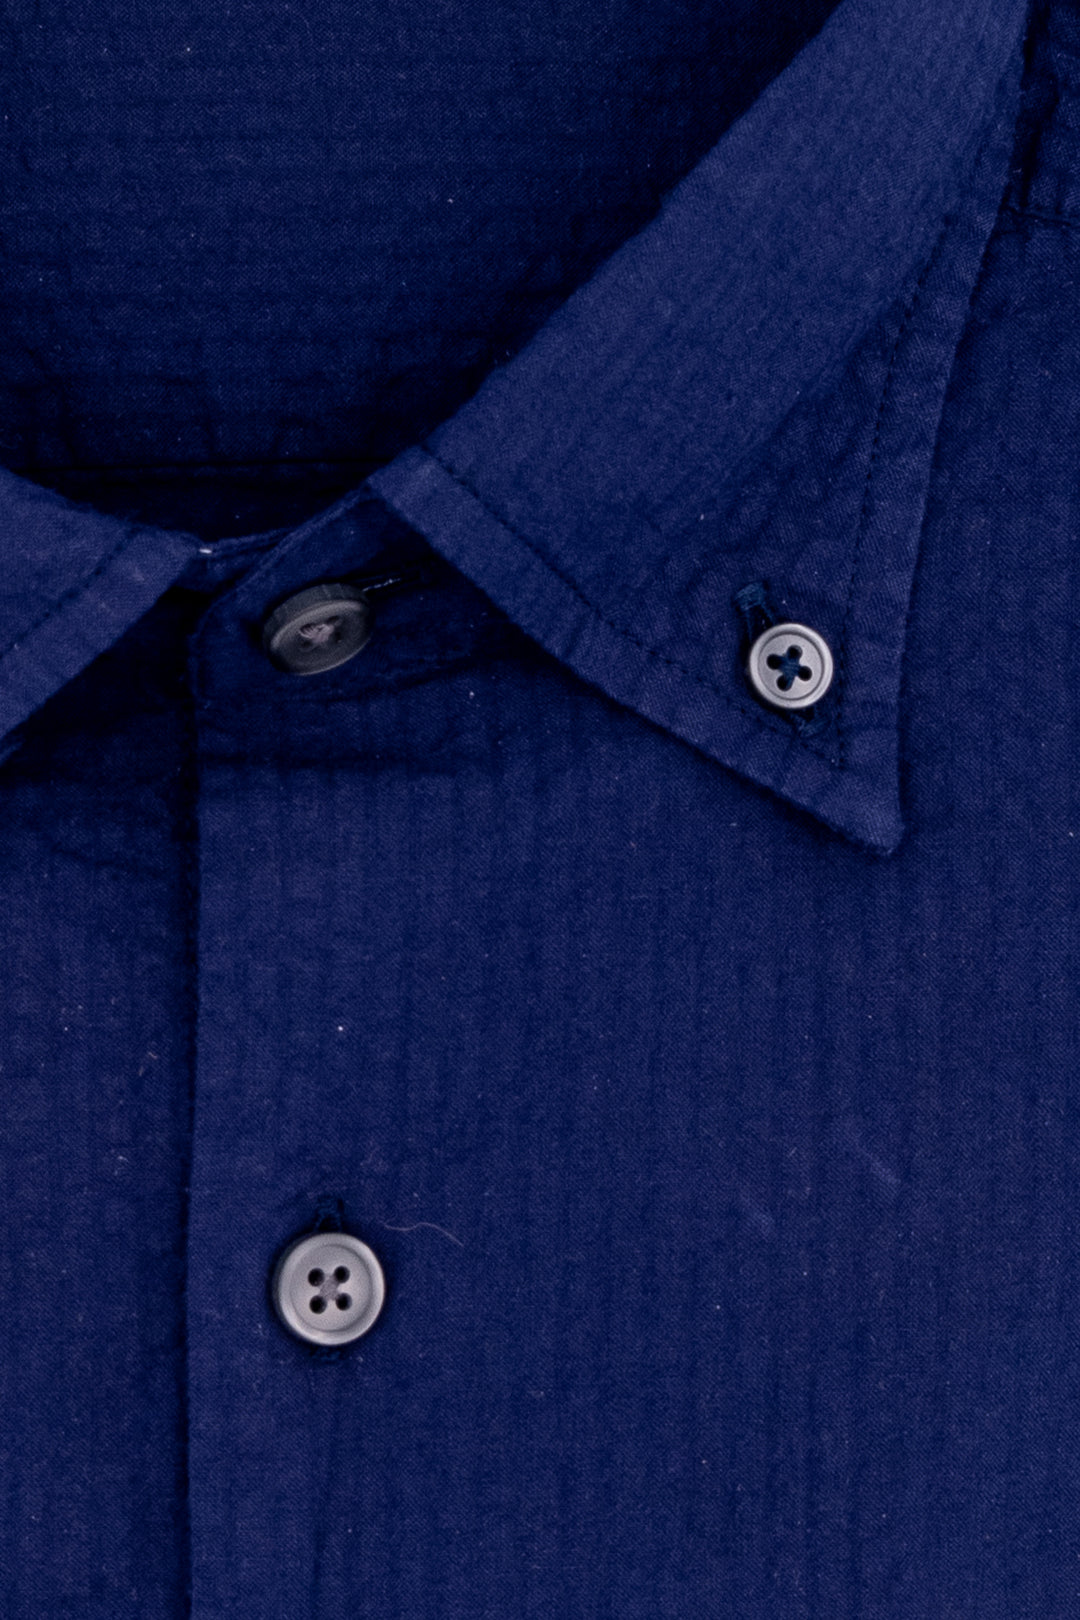 HDP Camicia slim button down blu scuro in cotone seersucker - Mancinelli 1954